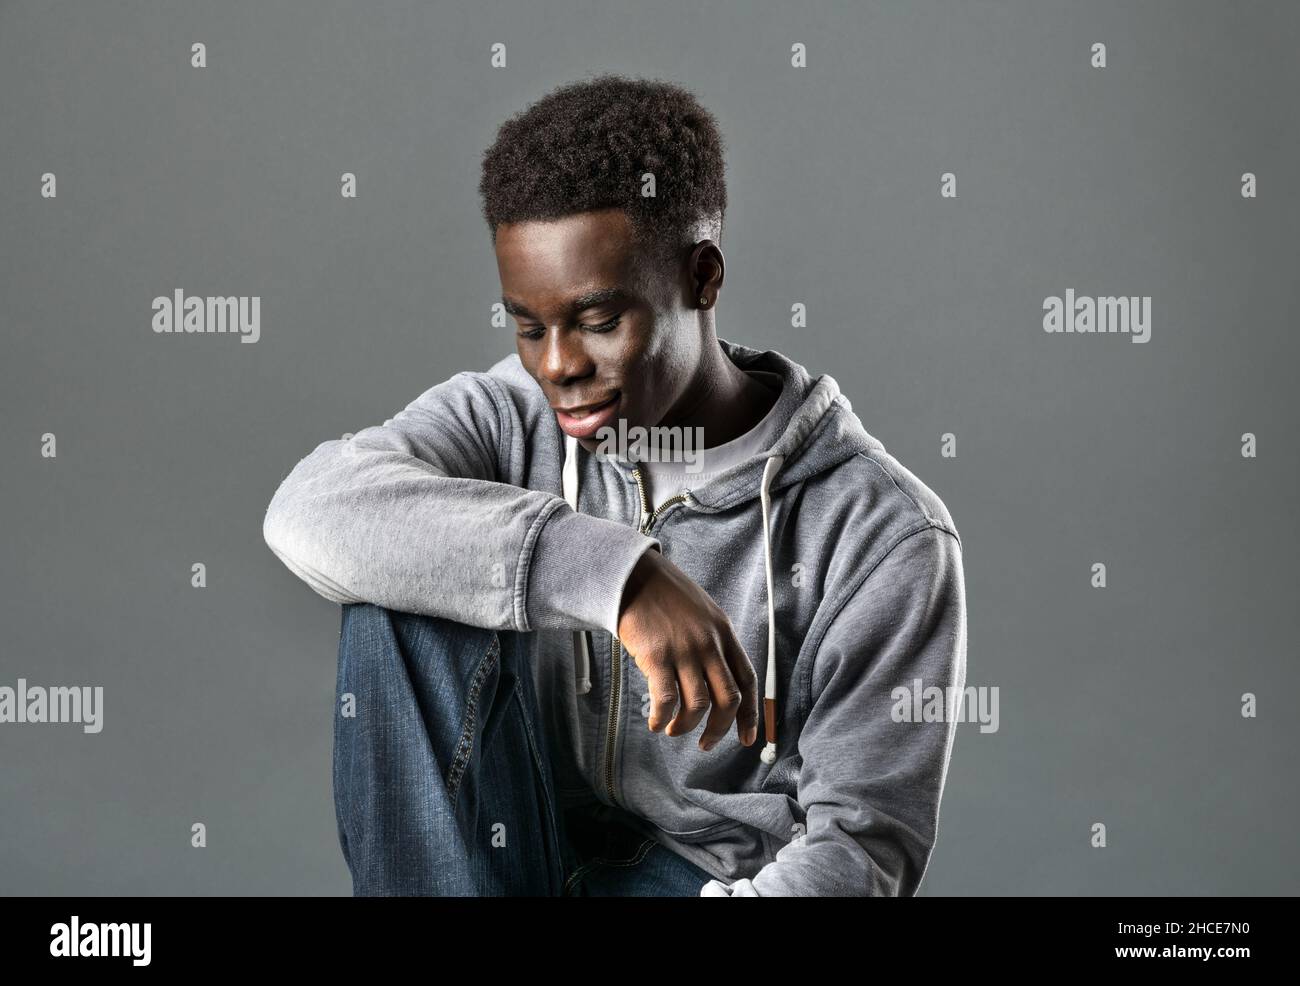 Positivo giovane nero modello maschio con capelli neri Afro scuro in felpa con cappuccio alla moda e jeans sorridenti e guardando giù mentre si siede su sfondo grigio in studi Foto Stock